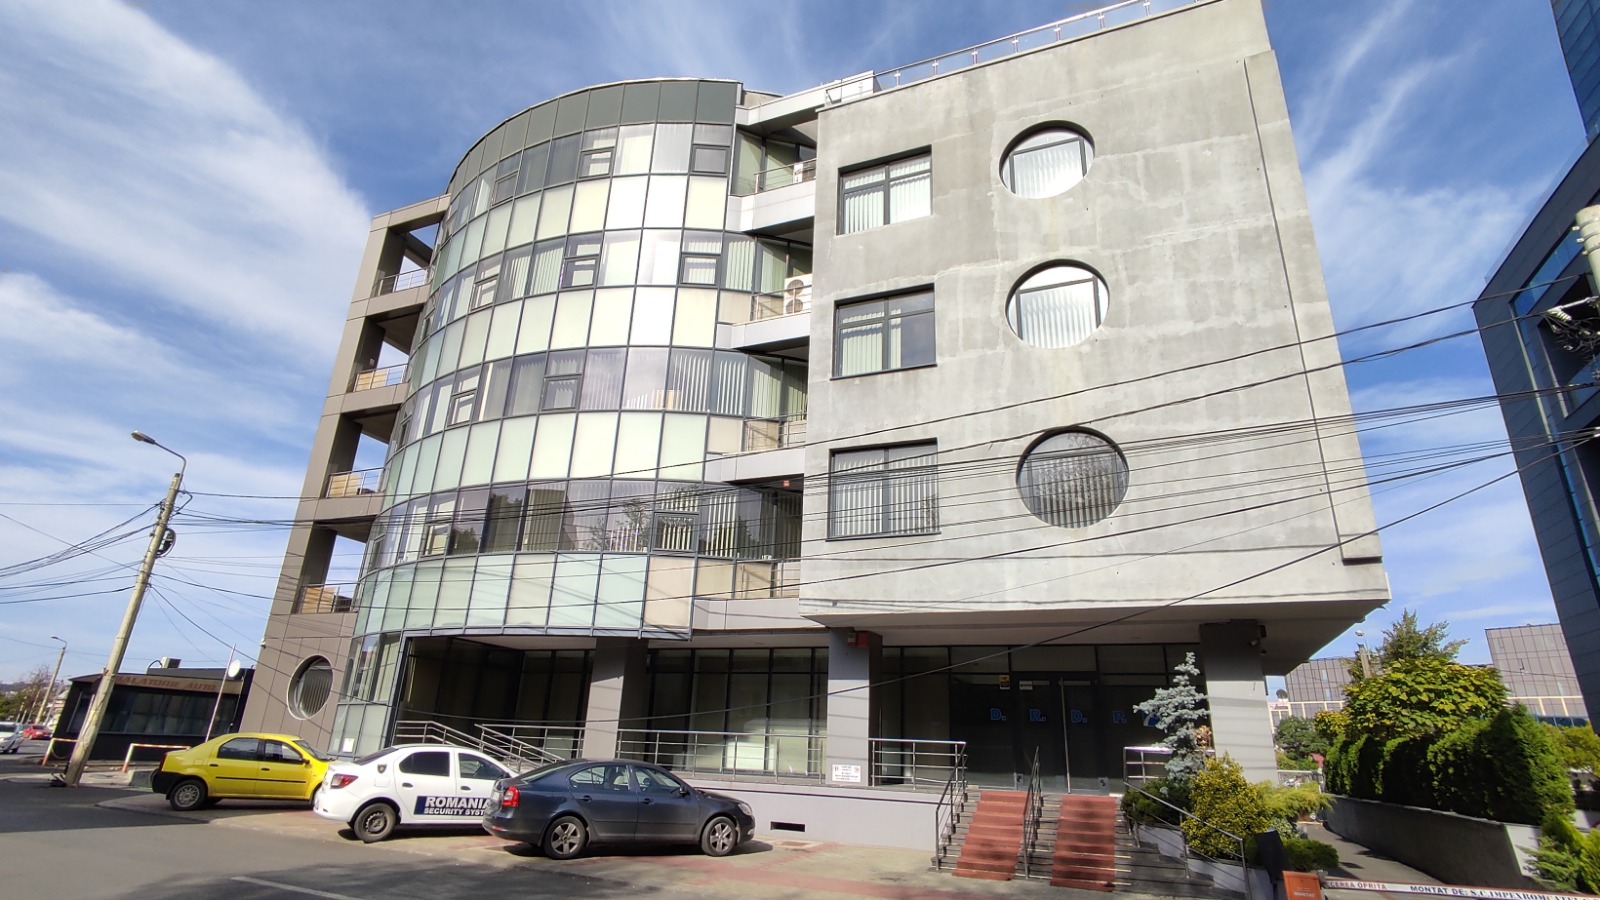 Clădirea aparține SC Ștefana SRL, administrată de familia Covalciuc. Ștefan Covalciuc este coleg de partid (PSD) cu Ovidiu Laicu, directorul de atunci al DRDP